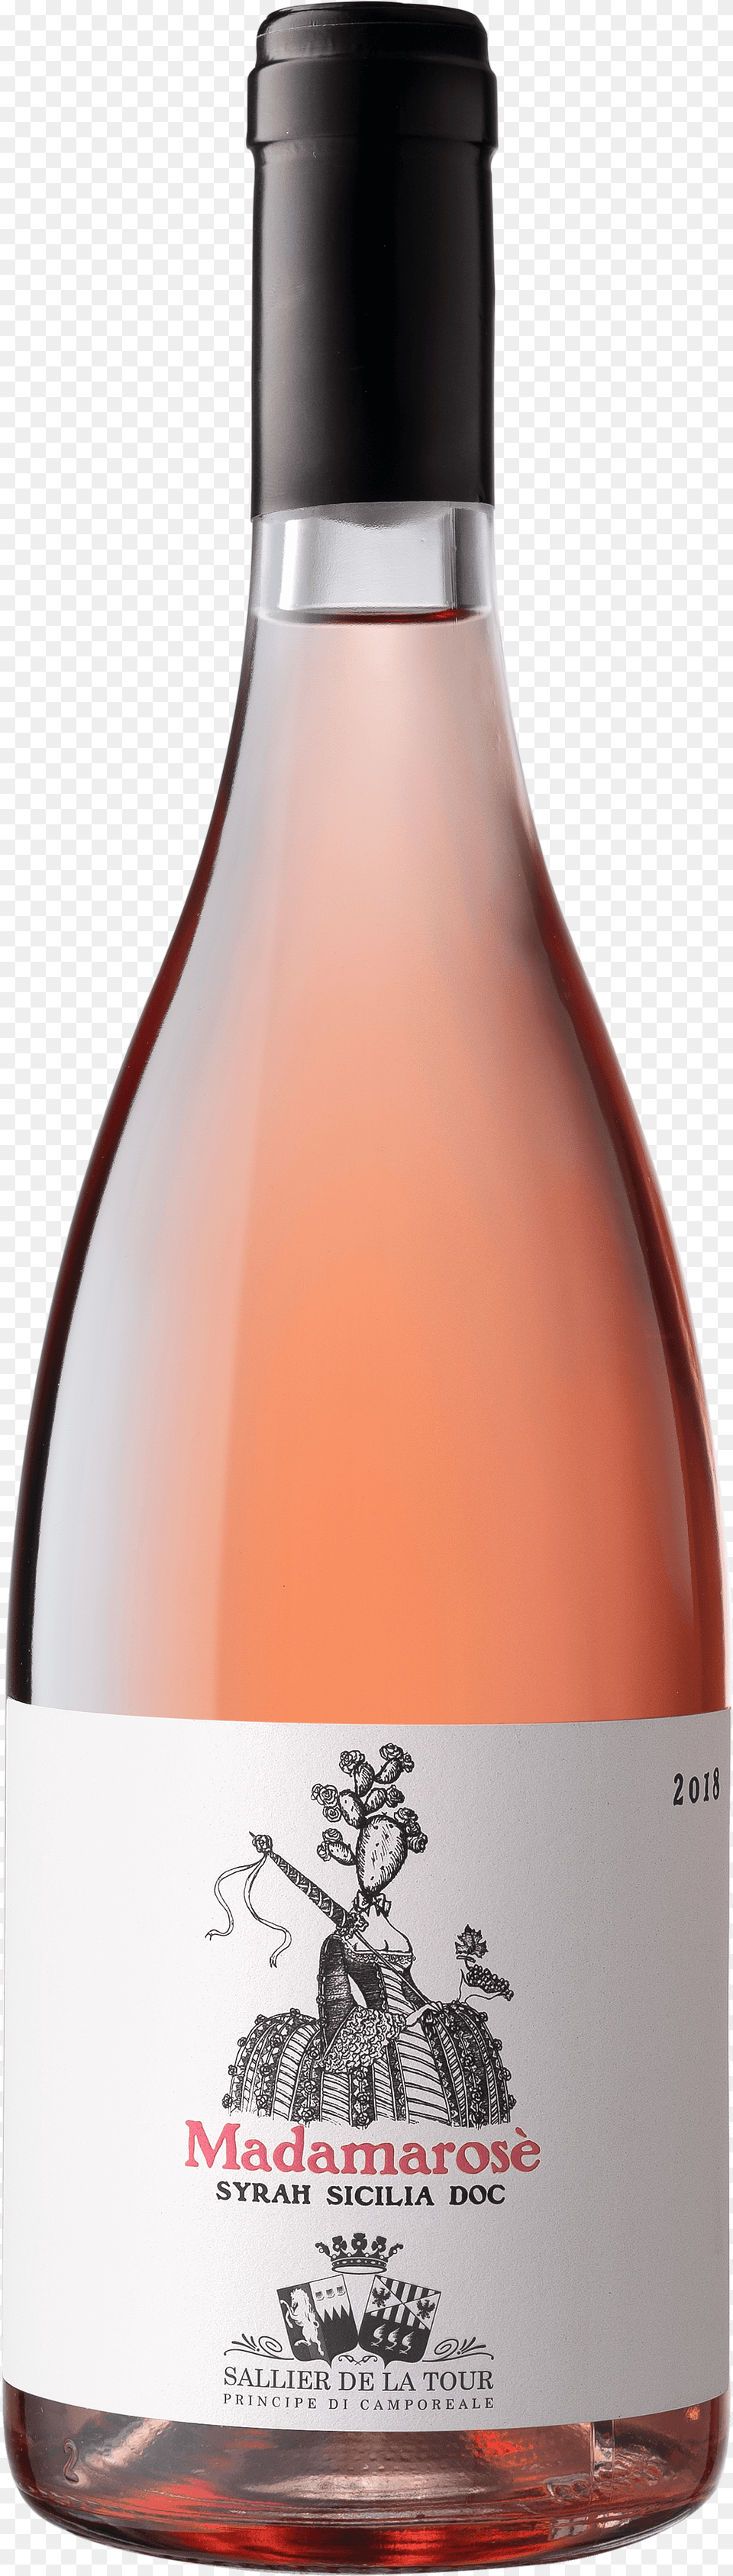 Glass Bottle, Alcohol, Wine Bottle, Beverage, Wine Png Image